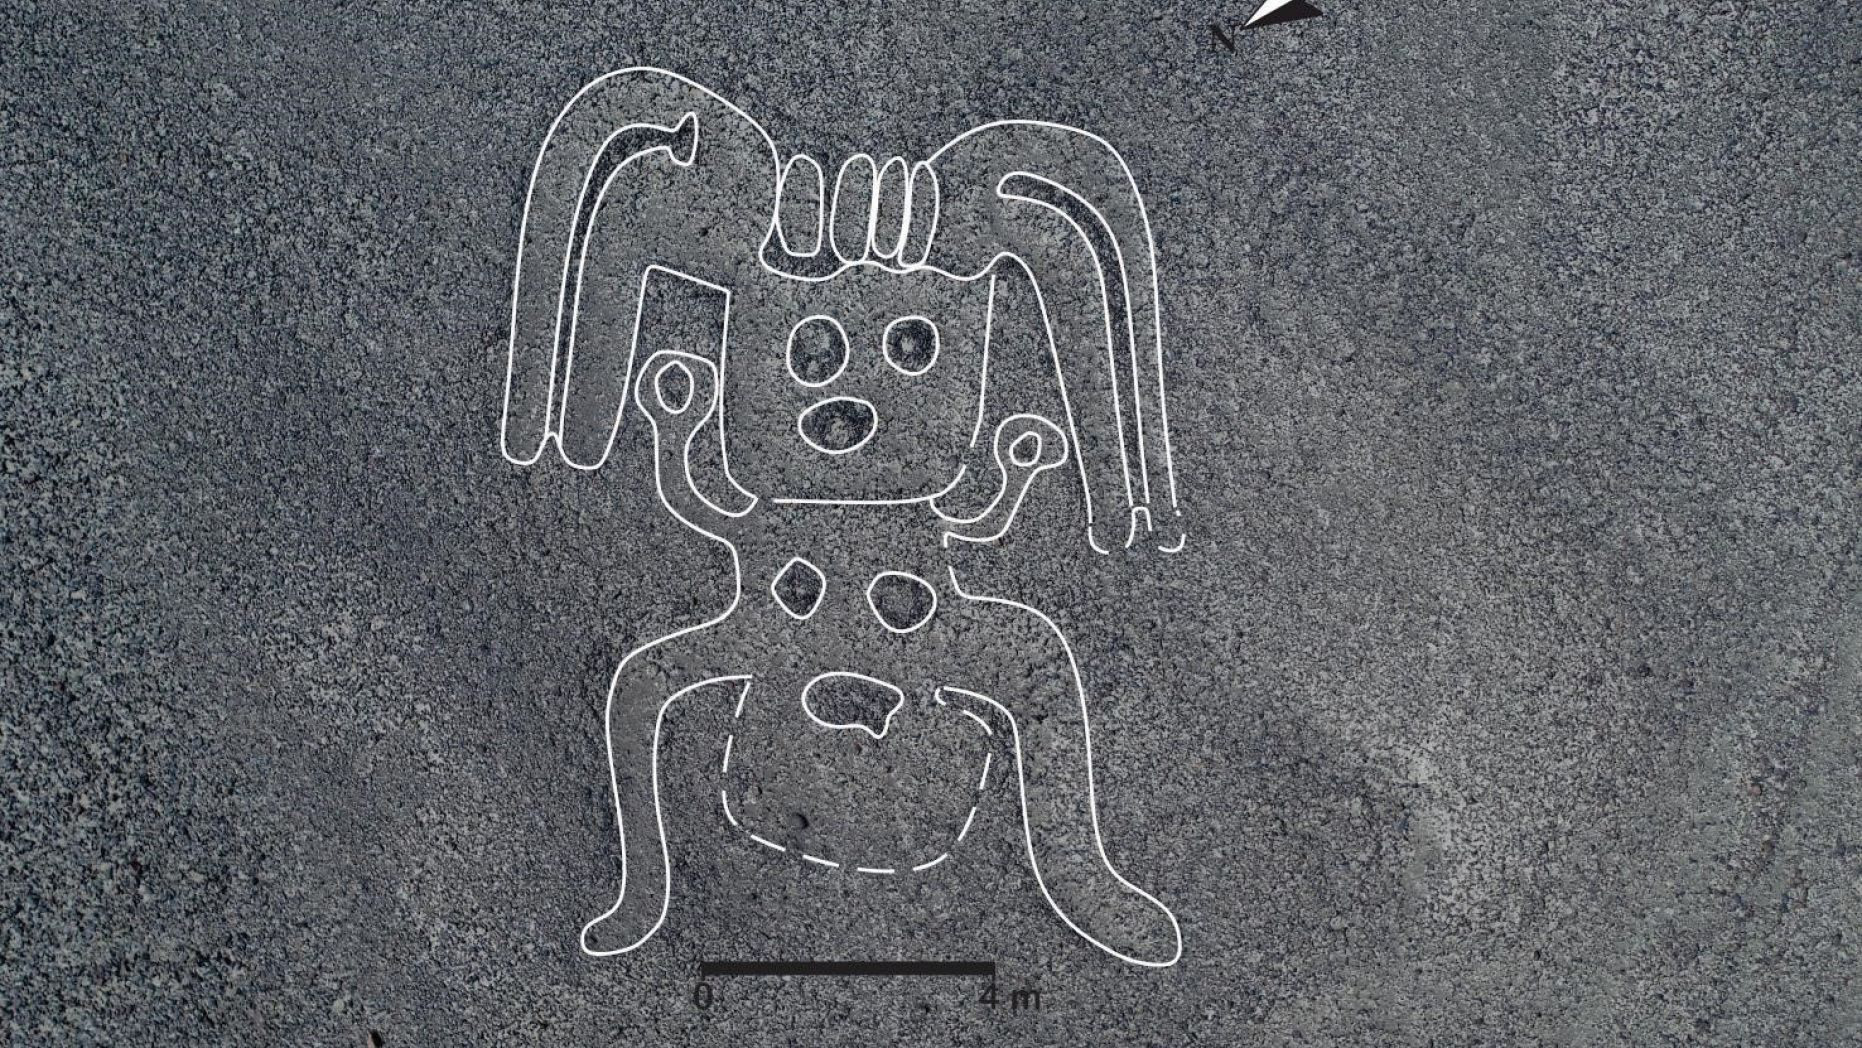 Những hình vẽ khổng lồ trên cao nguyên Nazca Bí ẩn chưa có lời đáp  Trí  Thức VN